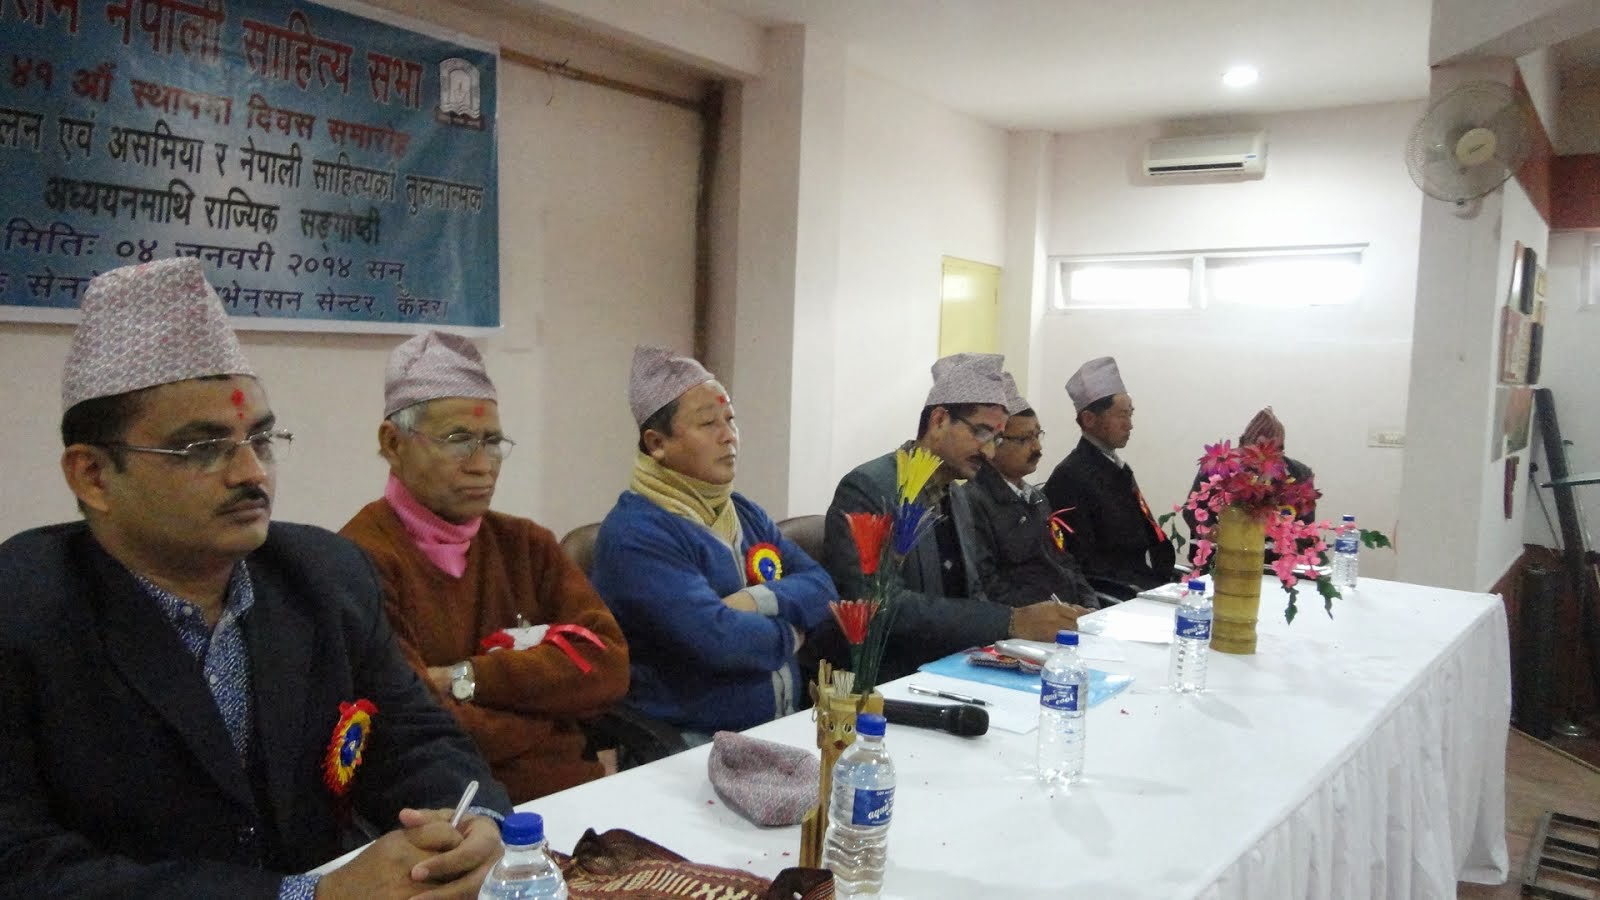 असम नेपाली साहित्य सभाको ४१औं स्थापना दिवस- कवि सम्मेलनको अध्यक्षता गर्दैः काजिरङ्गा ४ जनवरी २०१४